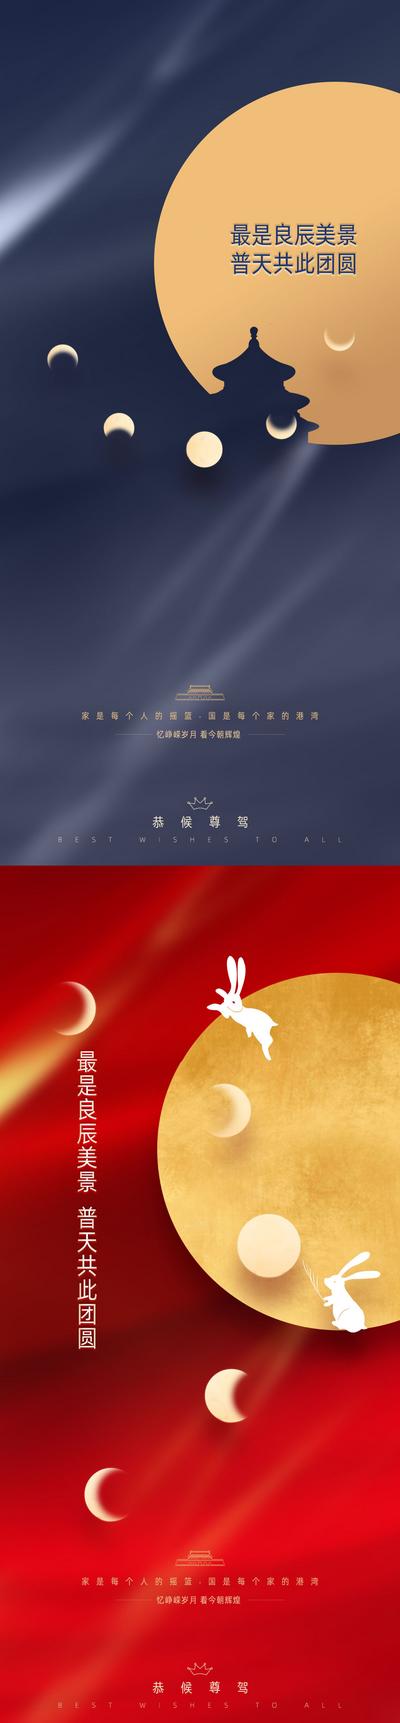 南门网 海报 中国传统节日 公历节日 国庆节 中秋节 简约 月亮 系列